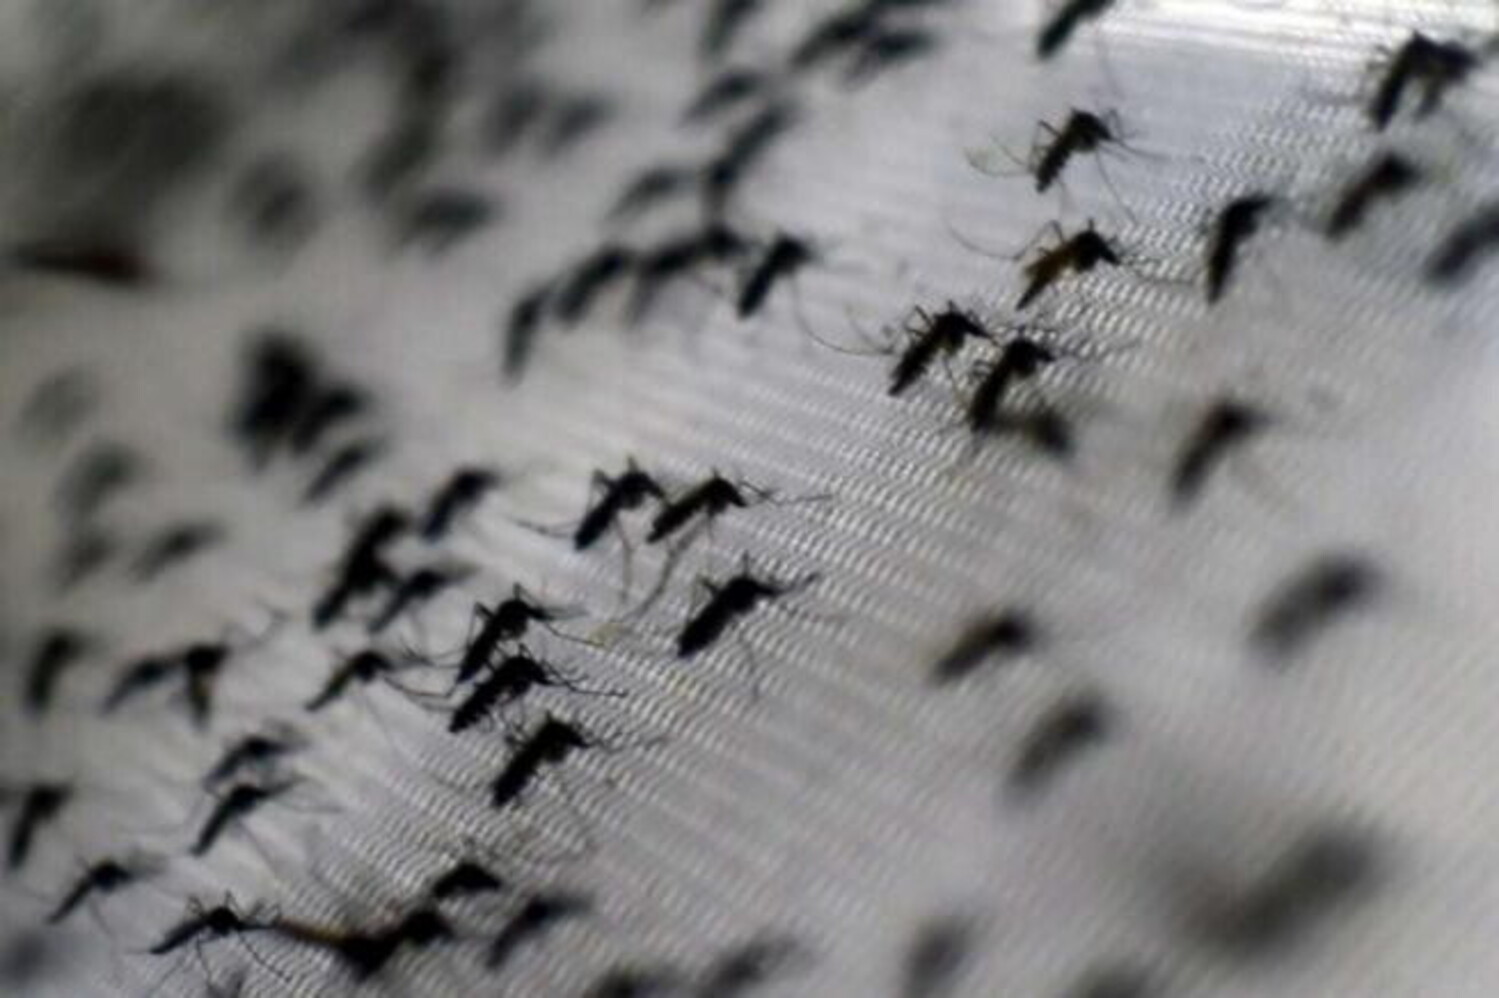 sospetto caso di dengue a brescia, al via disinfestazione